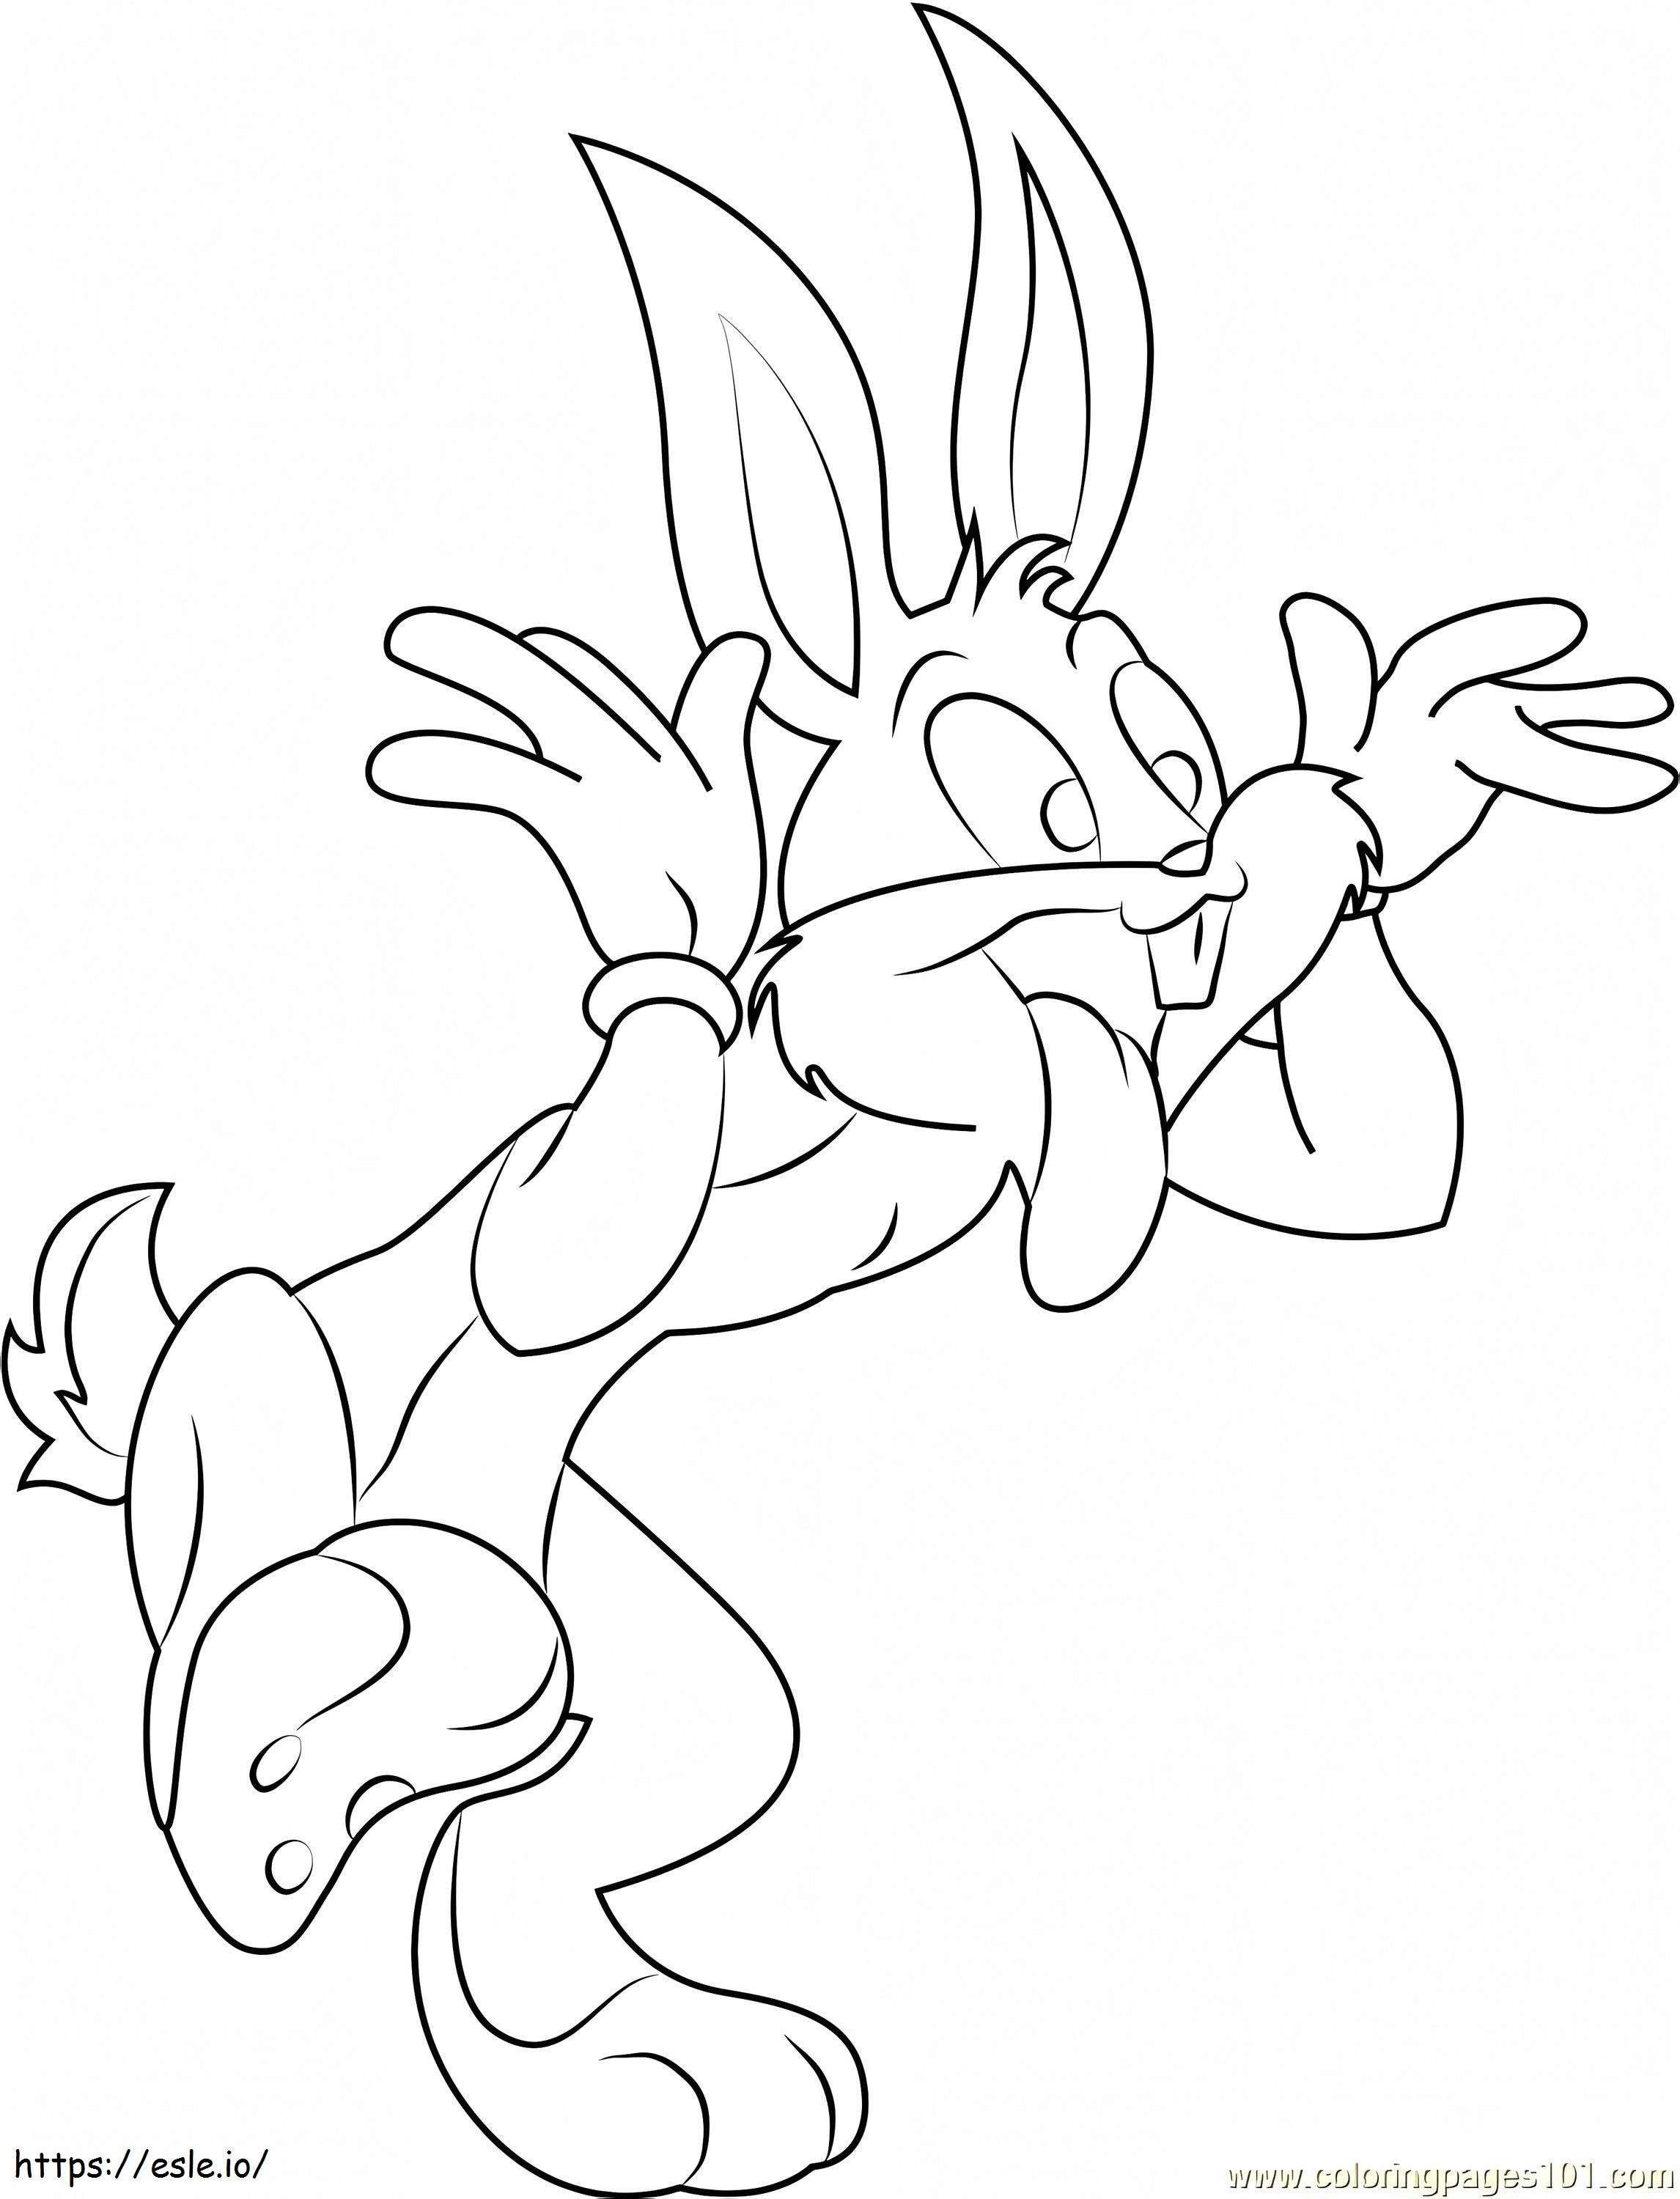 1530324261_Bugs Bunny Conejo1 para colorear